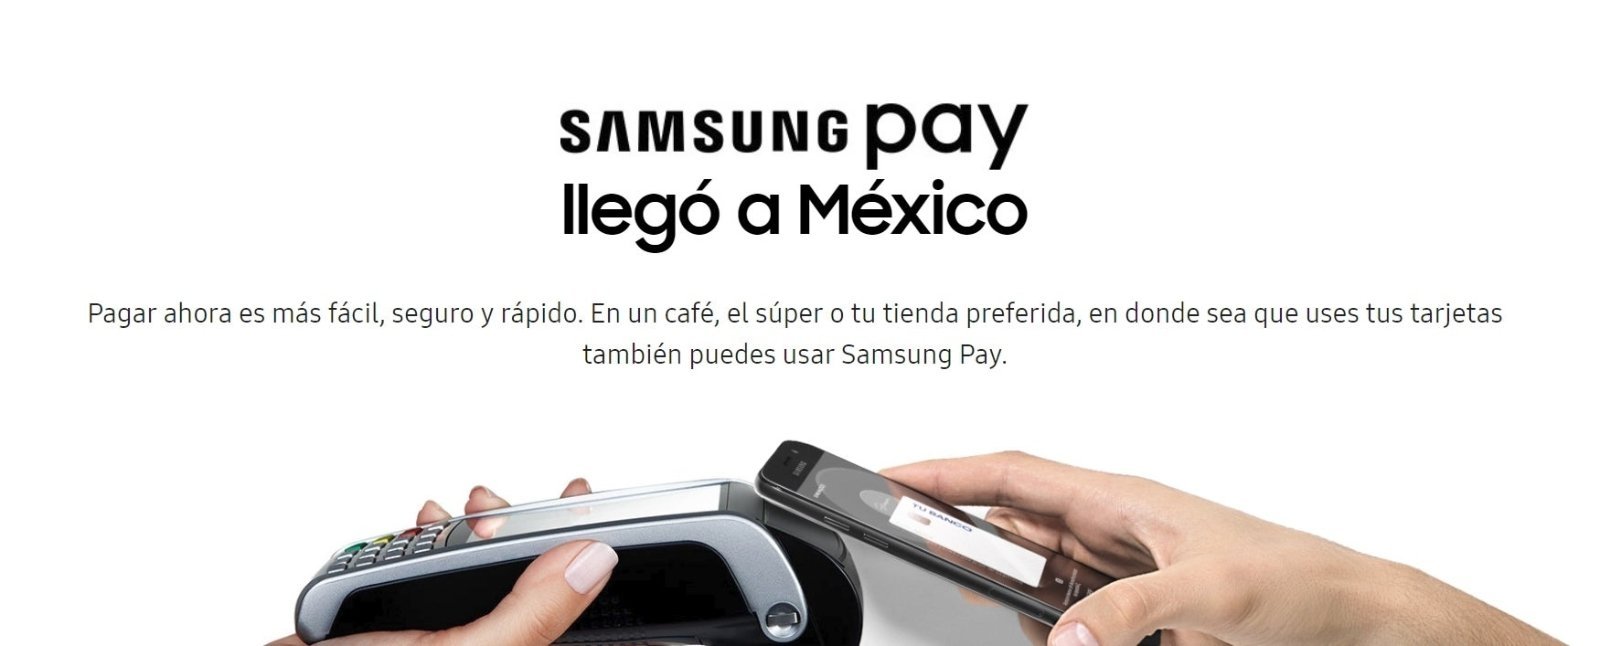 Samsung Pay en Mexico